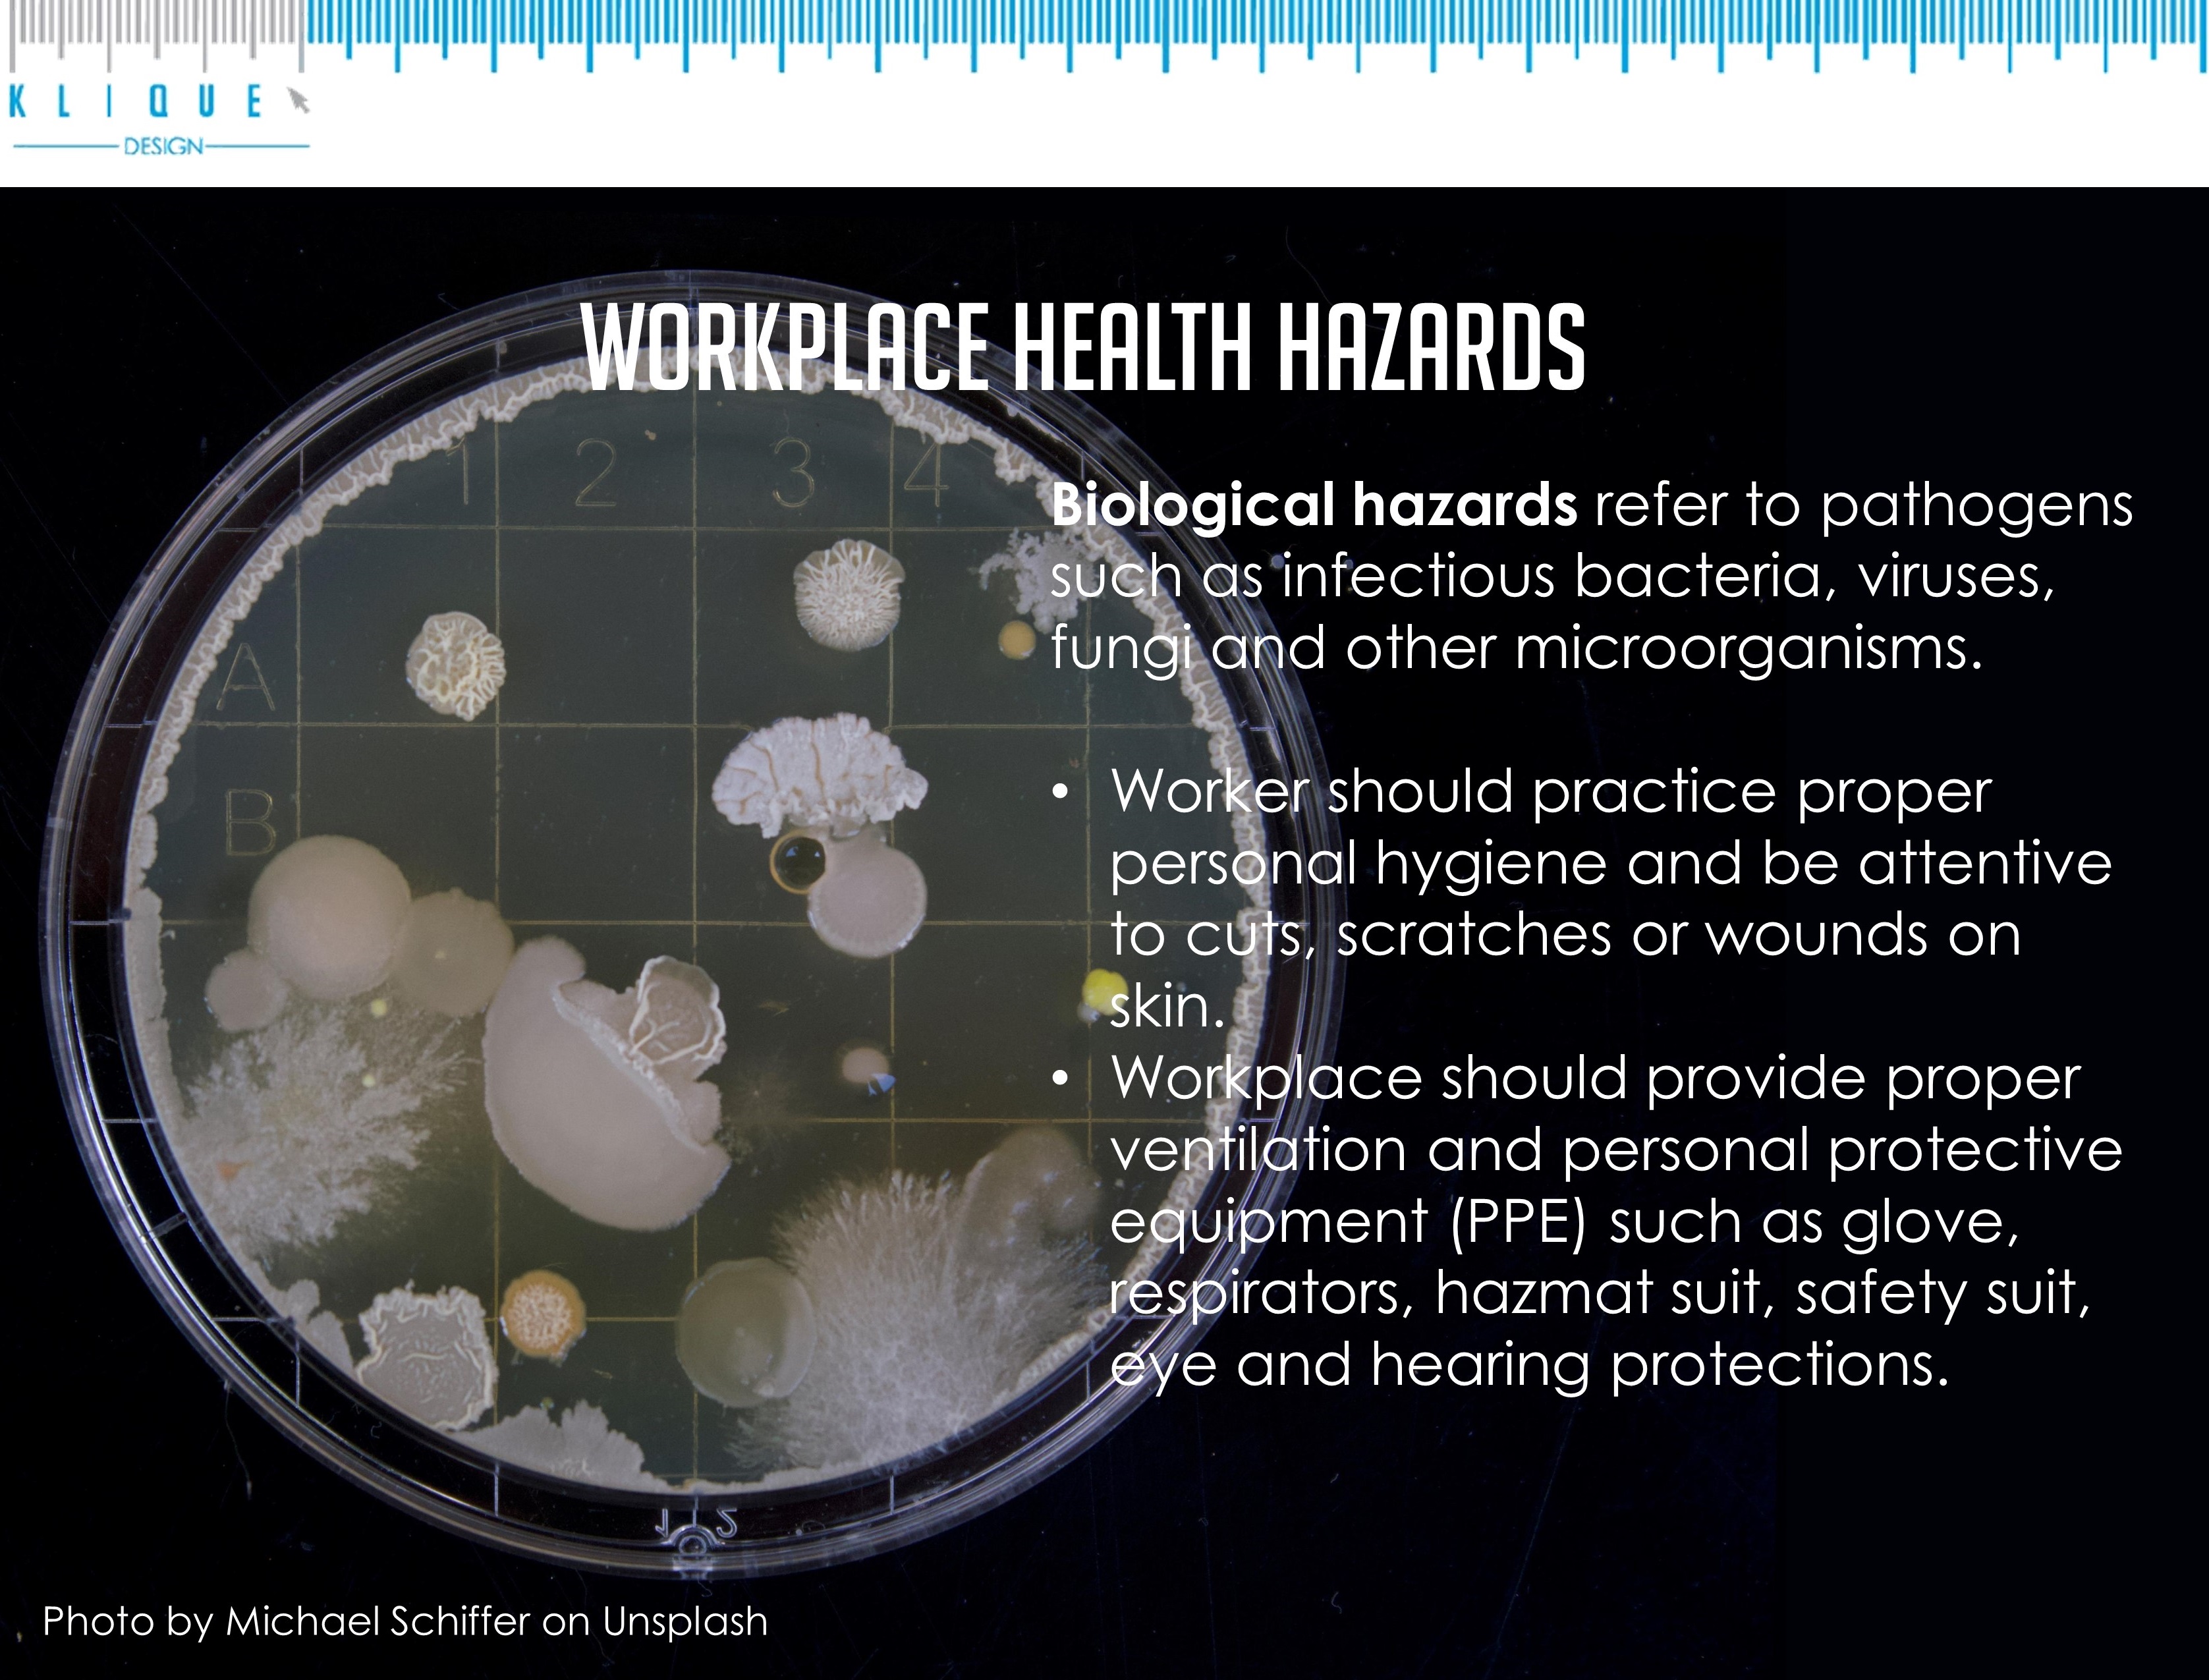 Workplace health hazards - biological hazards